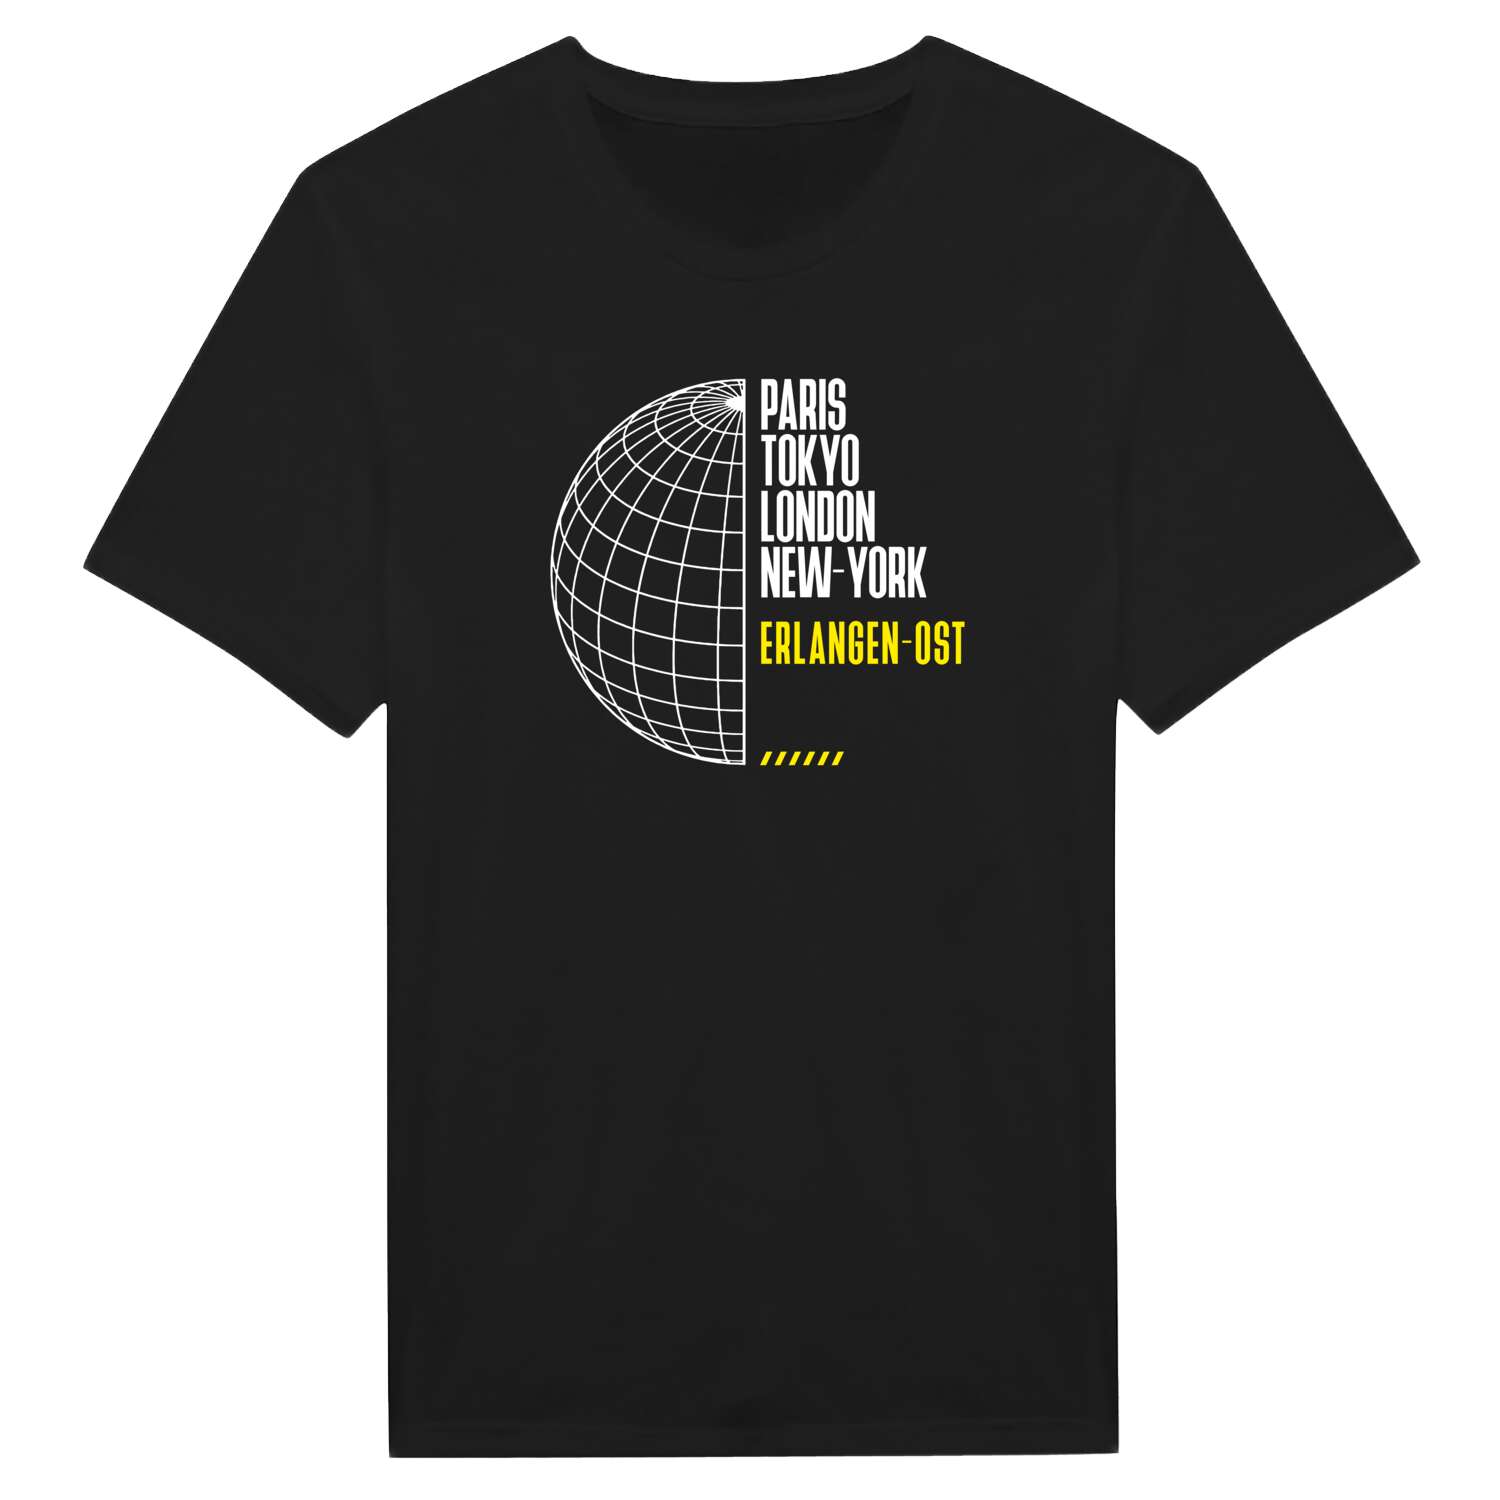 Erlangen-Ost T-Shirt »Paris Tokyo London«